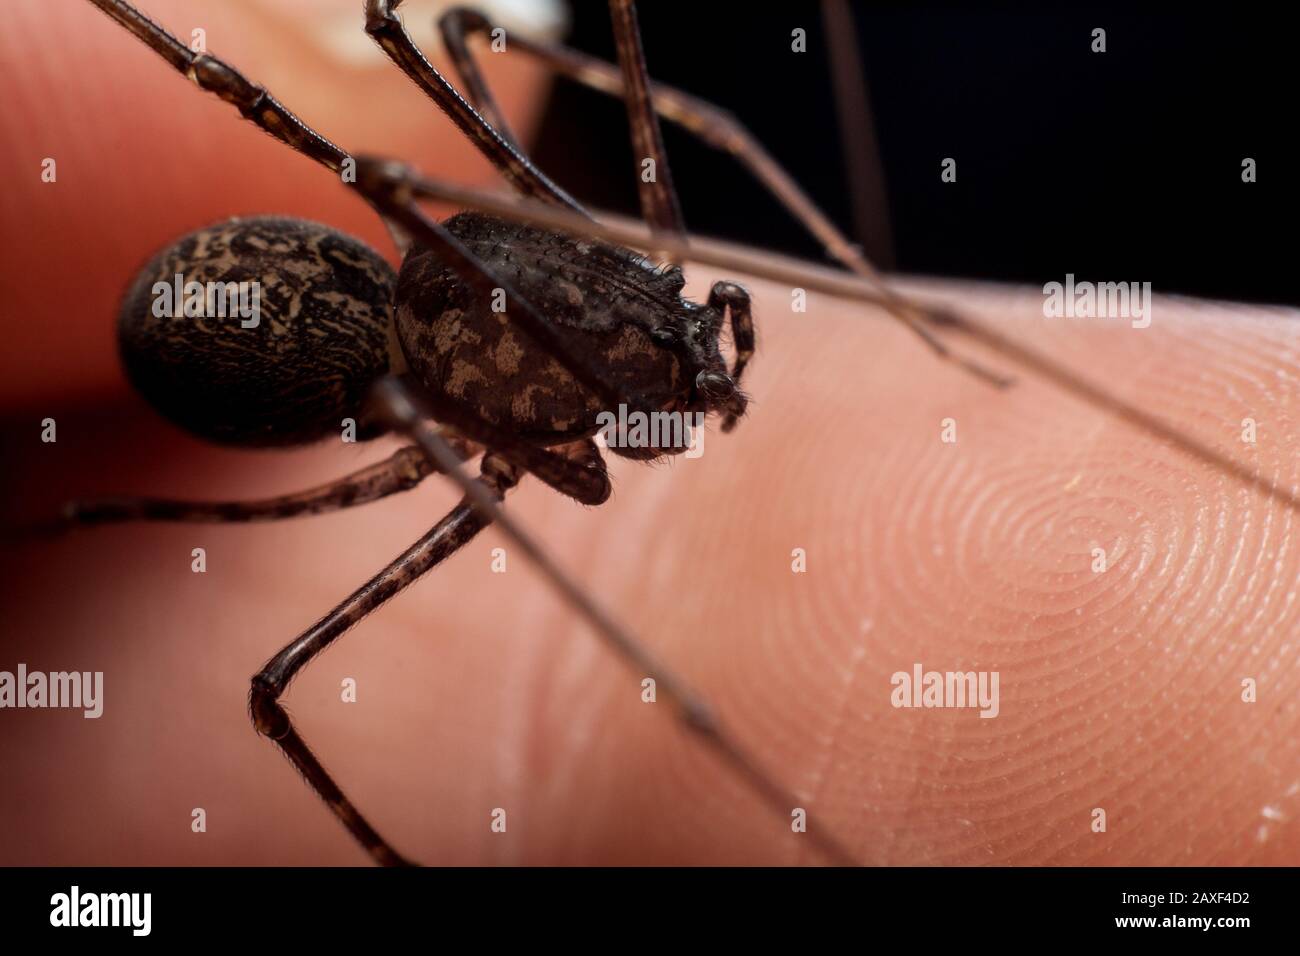 Petite araignée de maison connue sous le nom de araignée, Scytodes, gros plan de l'araignée sur la main Banque D'Images